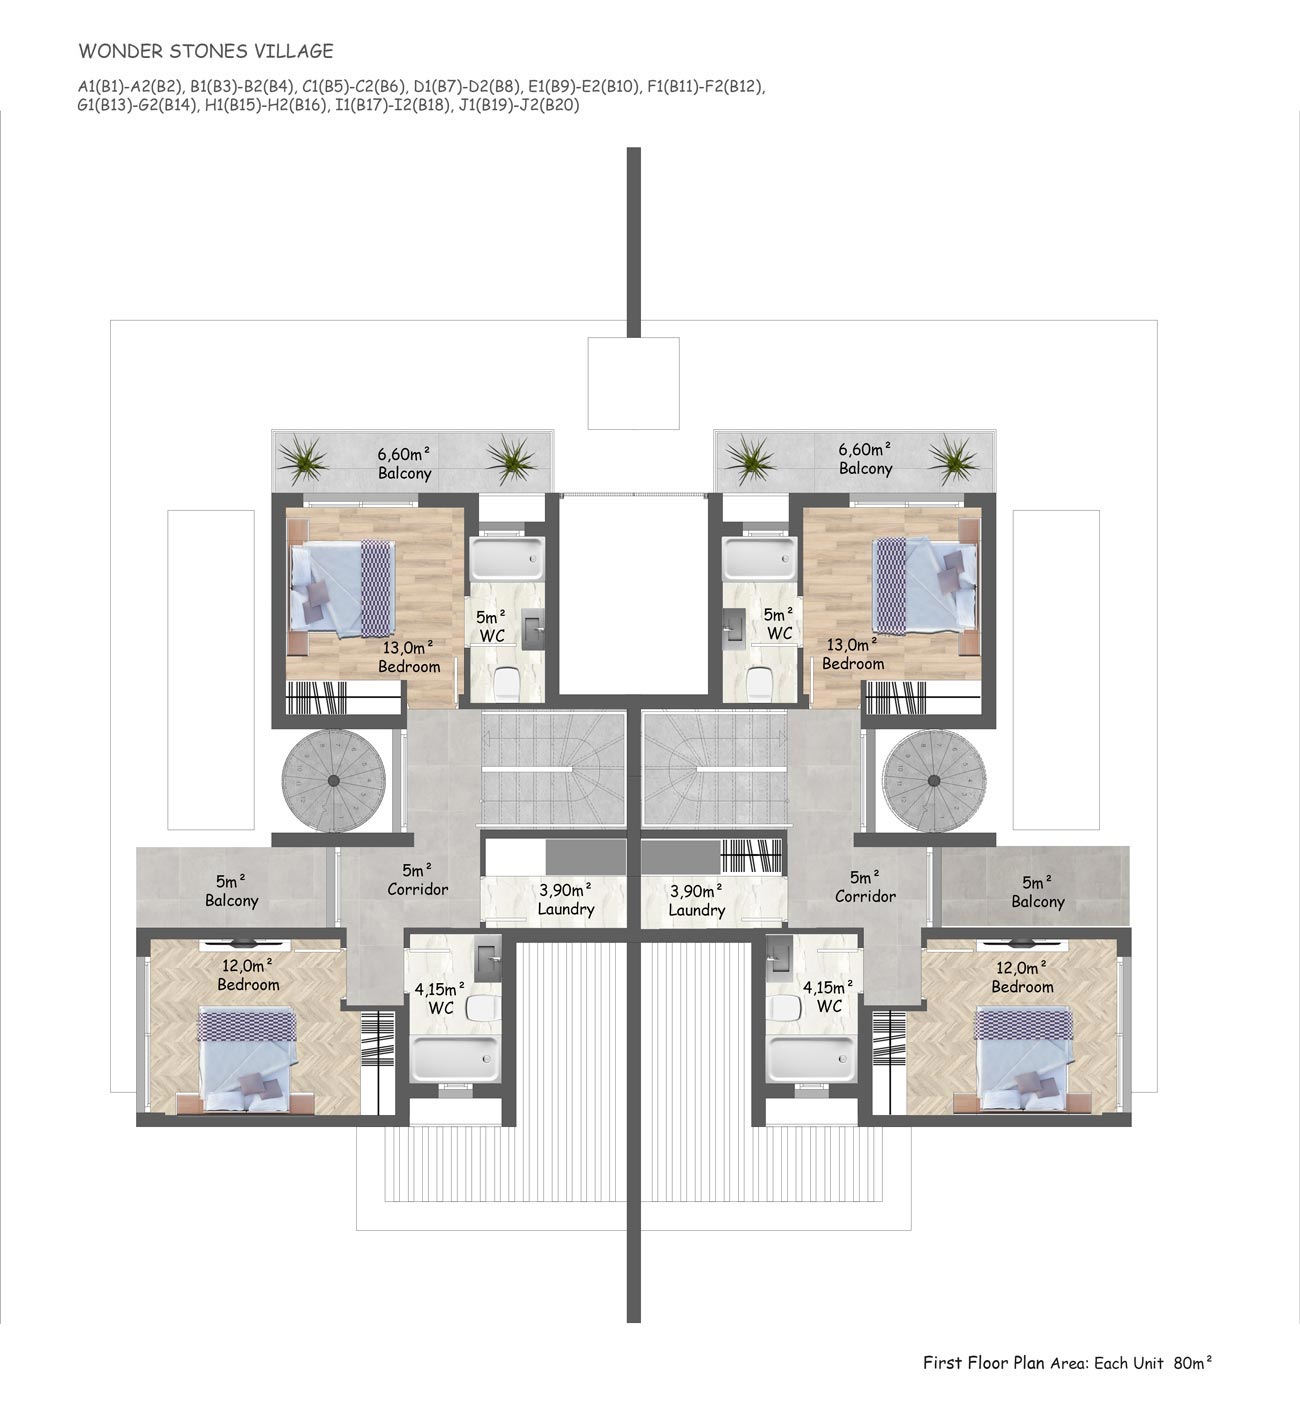 Floor Plan - 3 bedroom twin villa / first floor